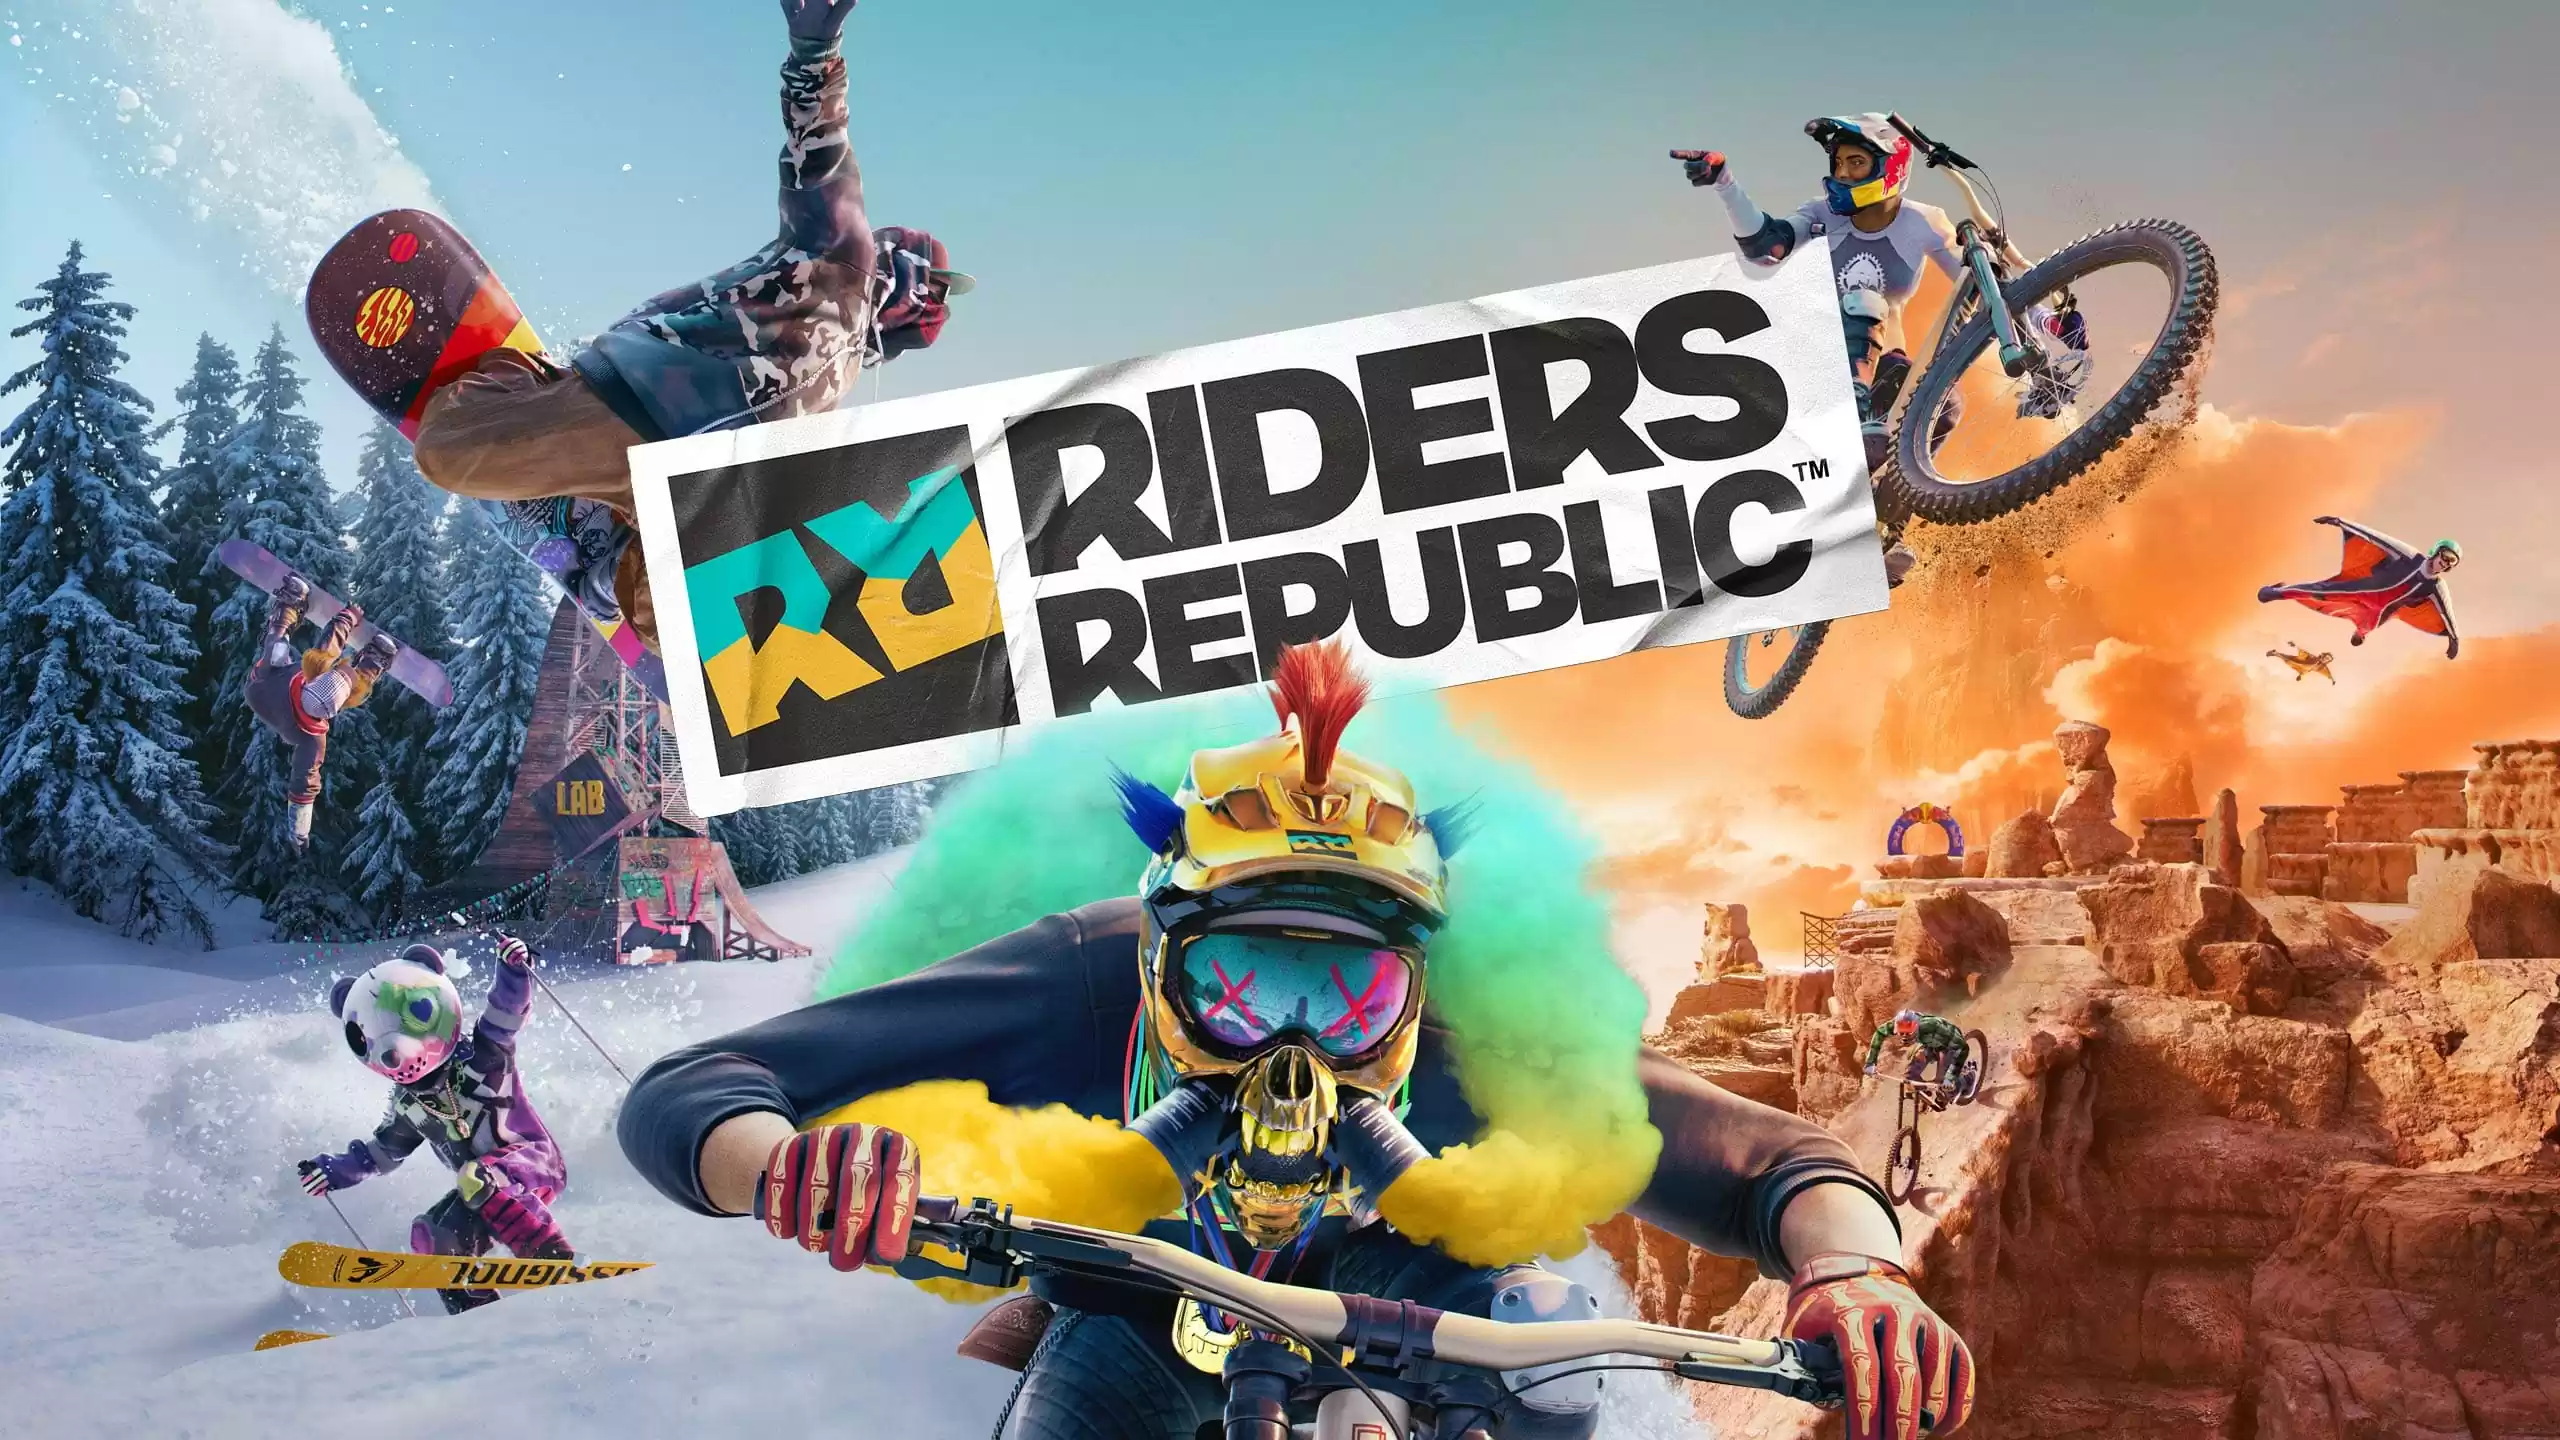 Riders Republic, la recensione: il nuovo Re degli sport estremi?